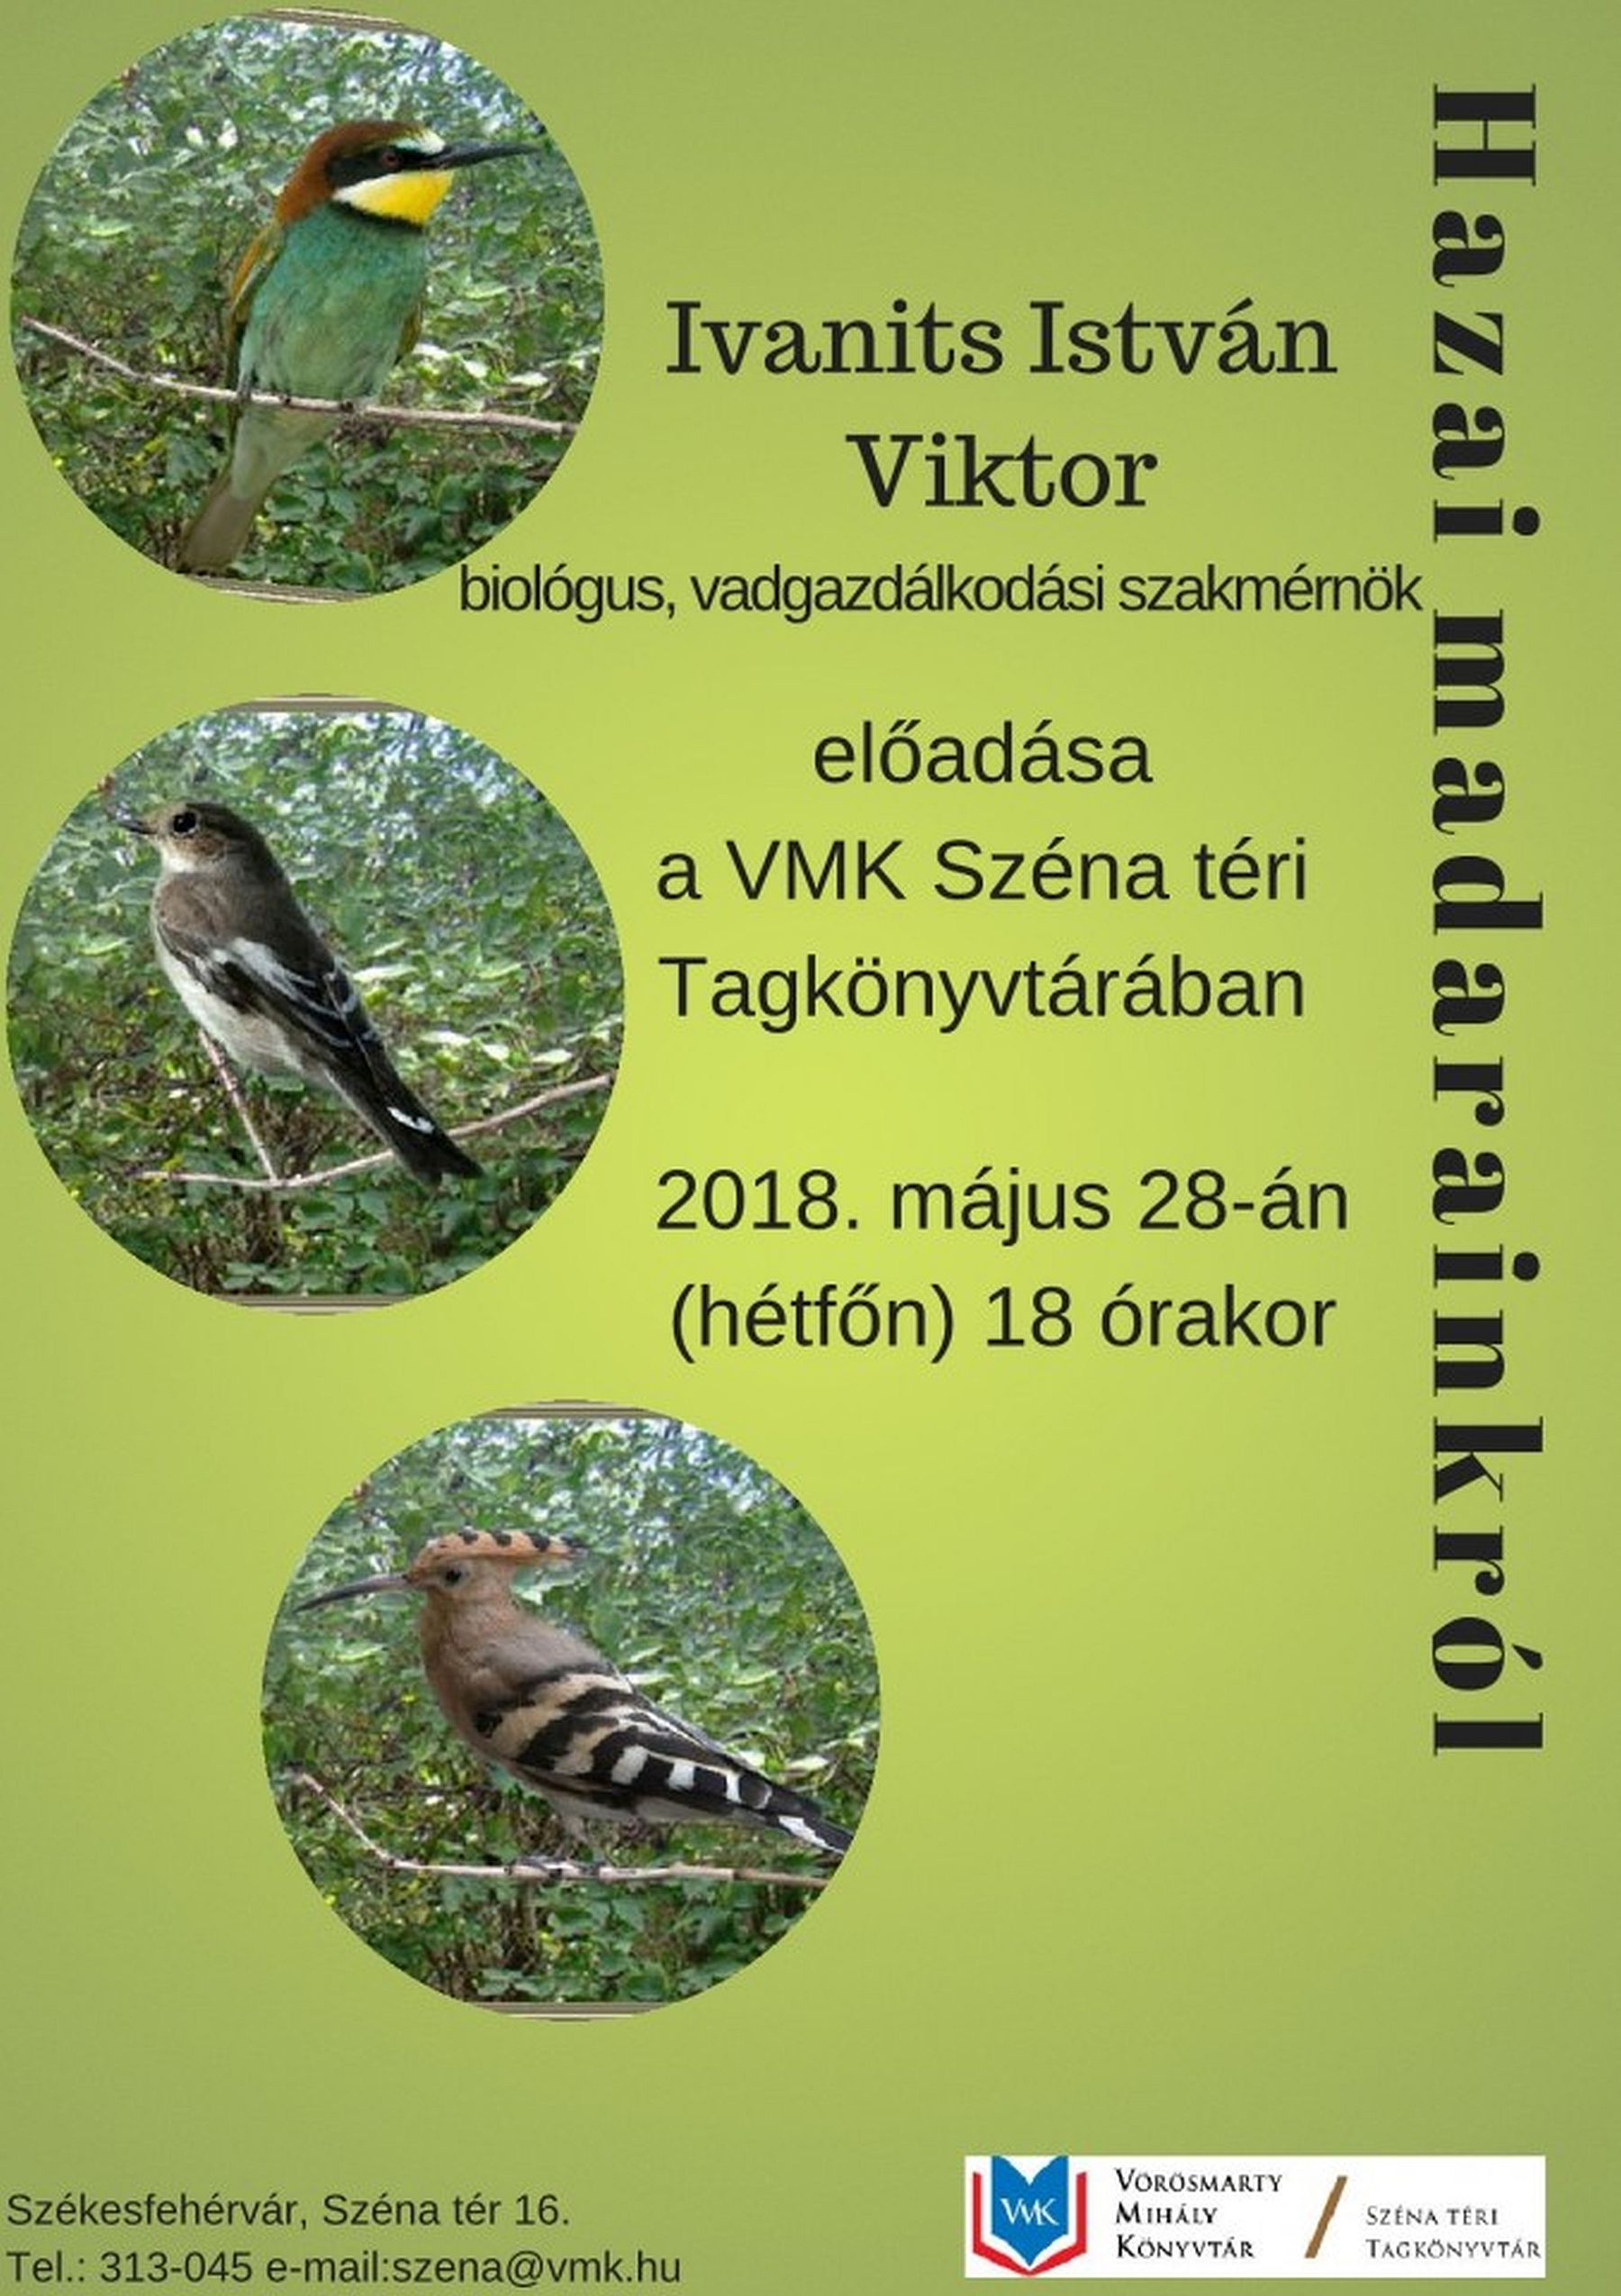 Hazai madarainkról - Ivanits István Viktor biológus, vadgazdálkodási szakmérnök előadása